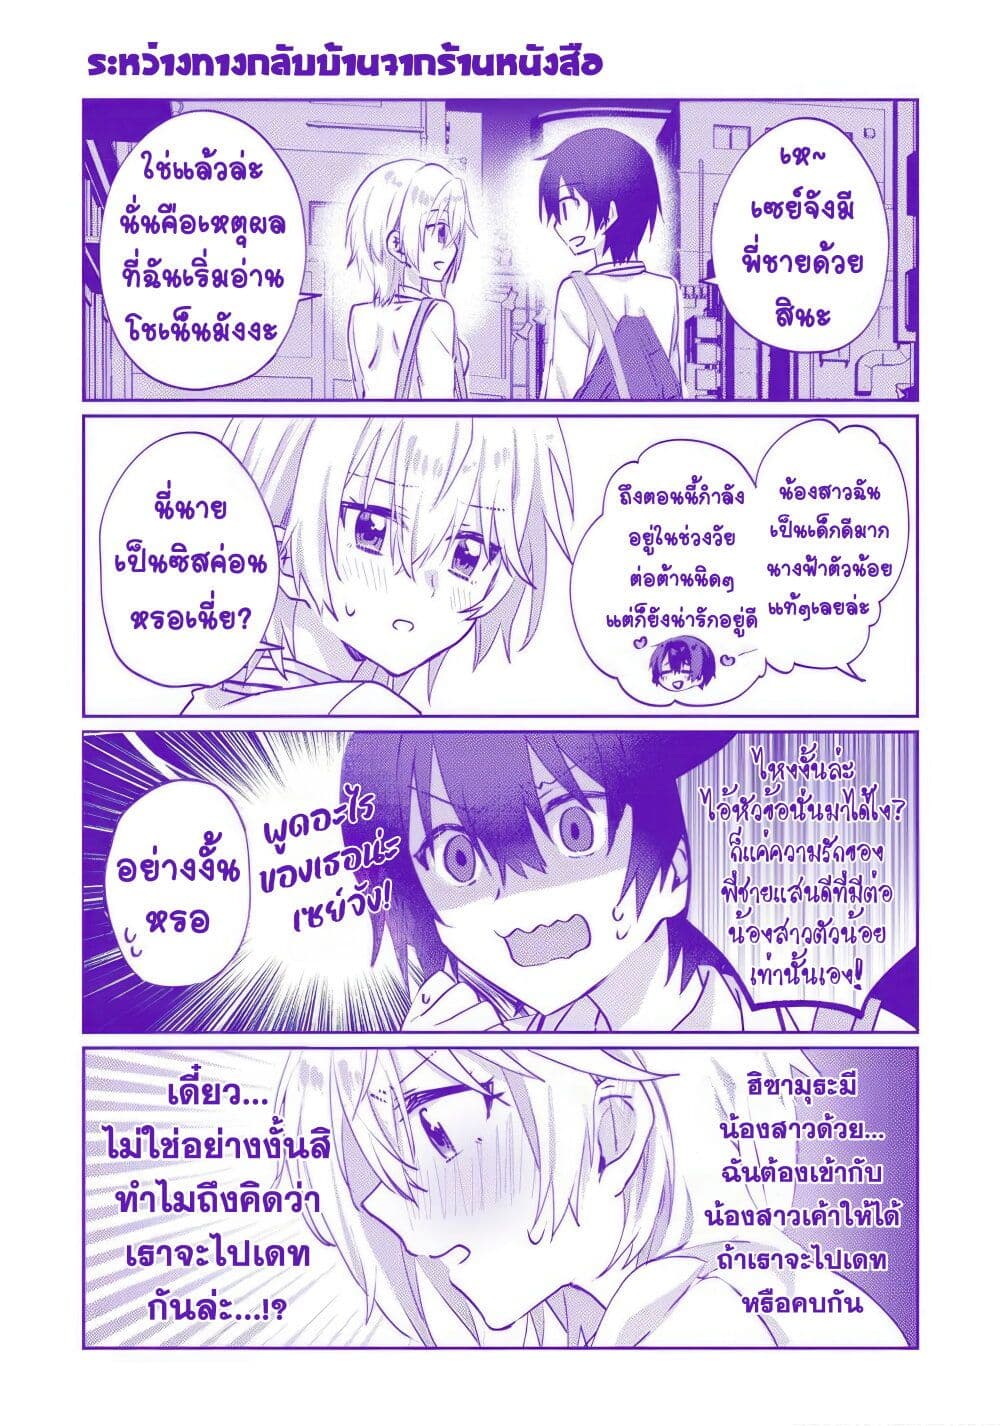 Romcom Manga ni Haitte Shimatta no de, Oshi no Make Heroine wo ตอนที่ 5.4 (2)